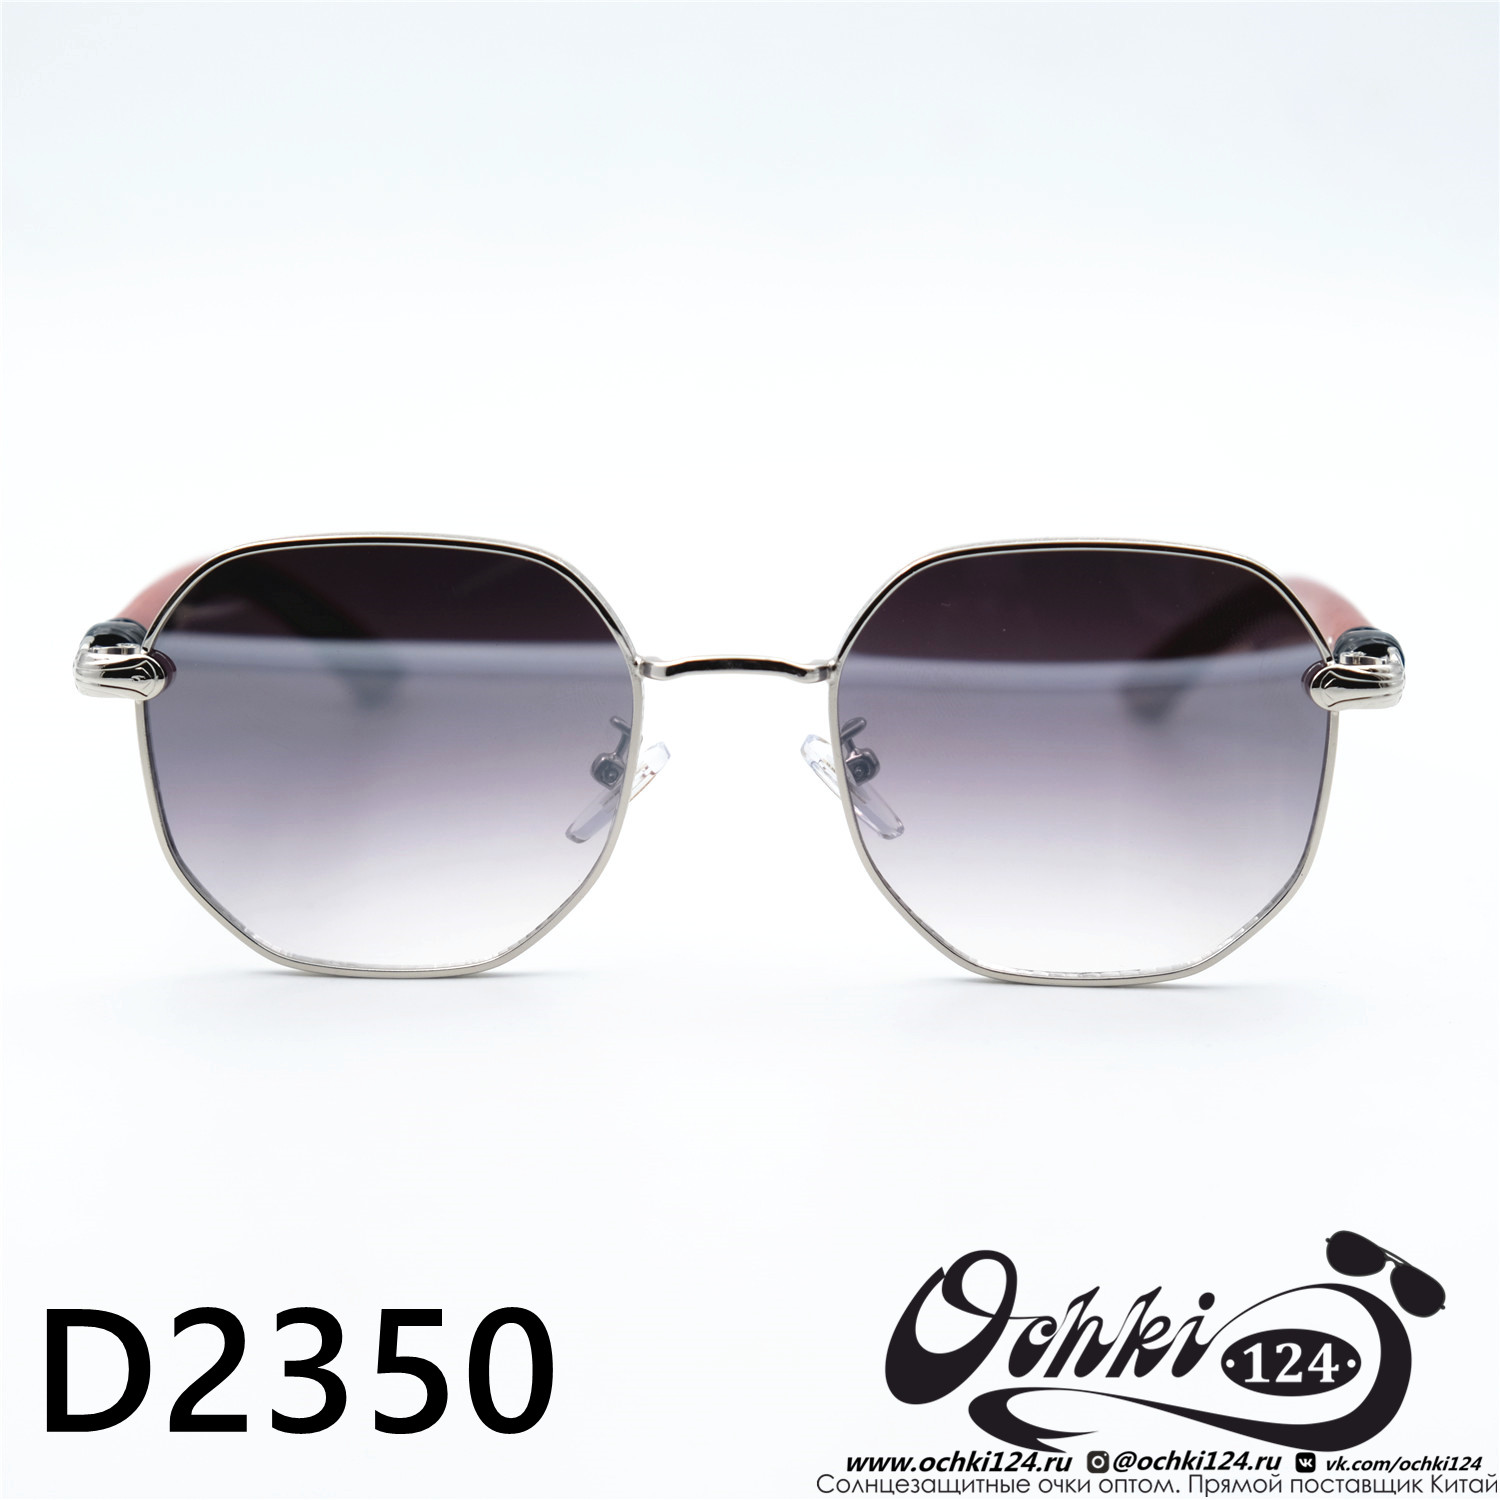  Солнцезащитные очки картинка Женские Yamanni  Геометрические формы D2350-C3-62 